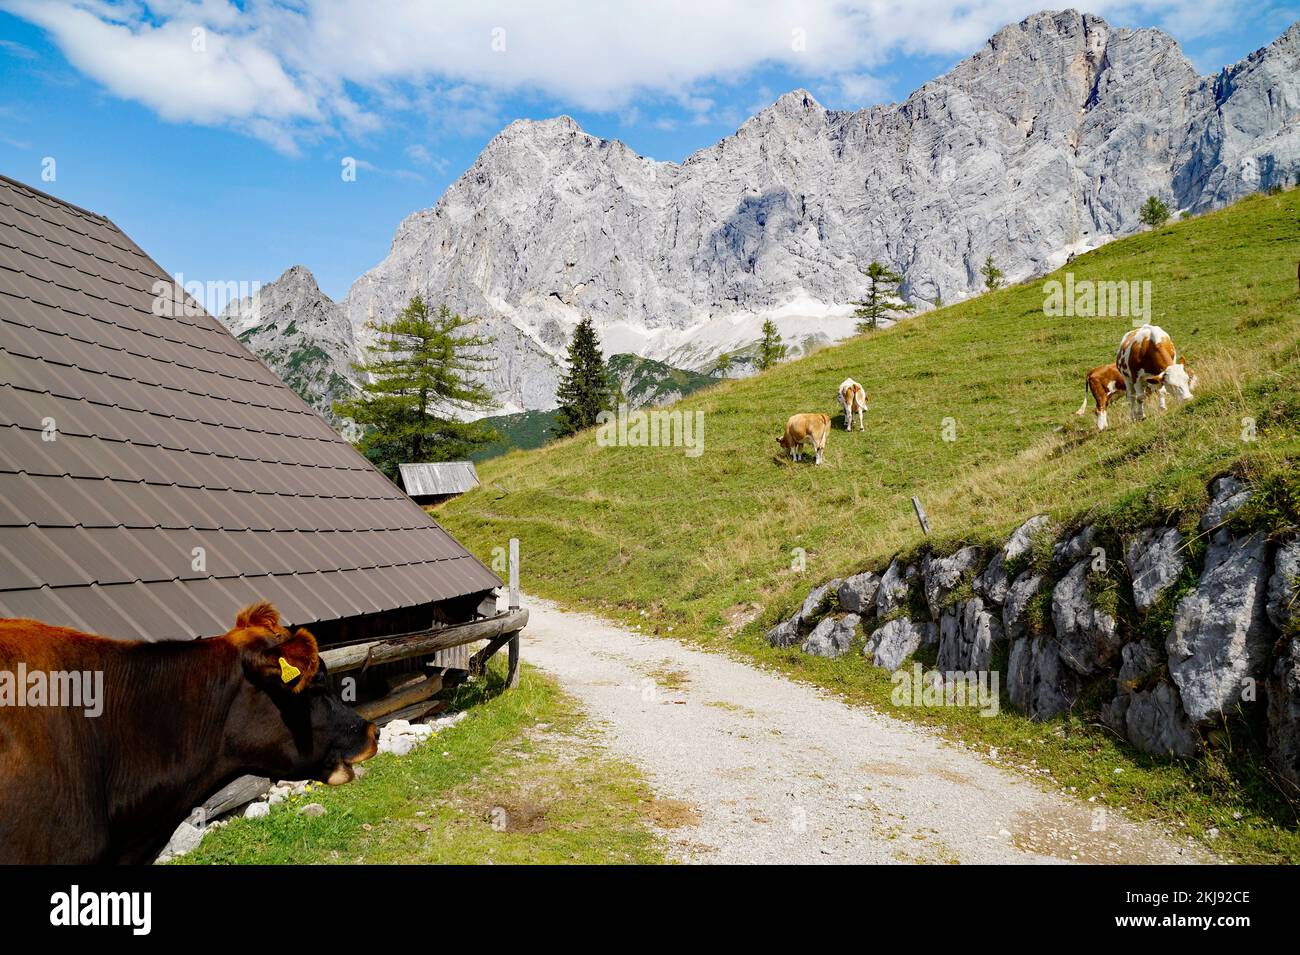 Le mucche pascolano in una giornata estiva di sole nella valle alpina ai piedi del monte Dachstein, nella regione Schladming-Dachstein delle Alpi austriache Foto Stock